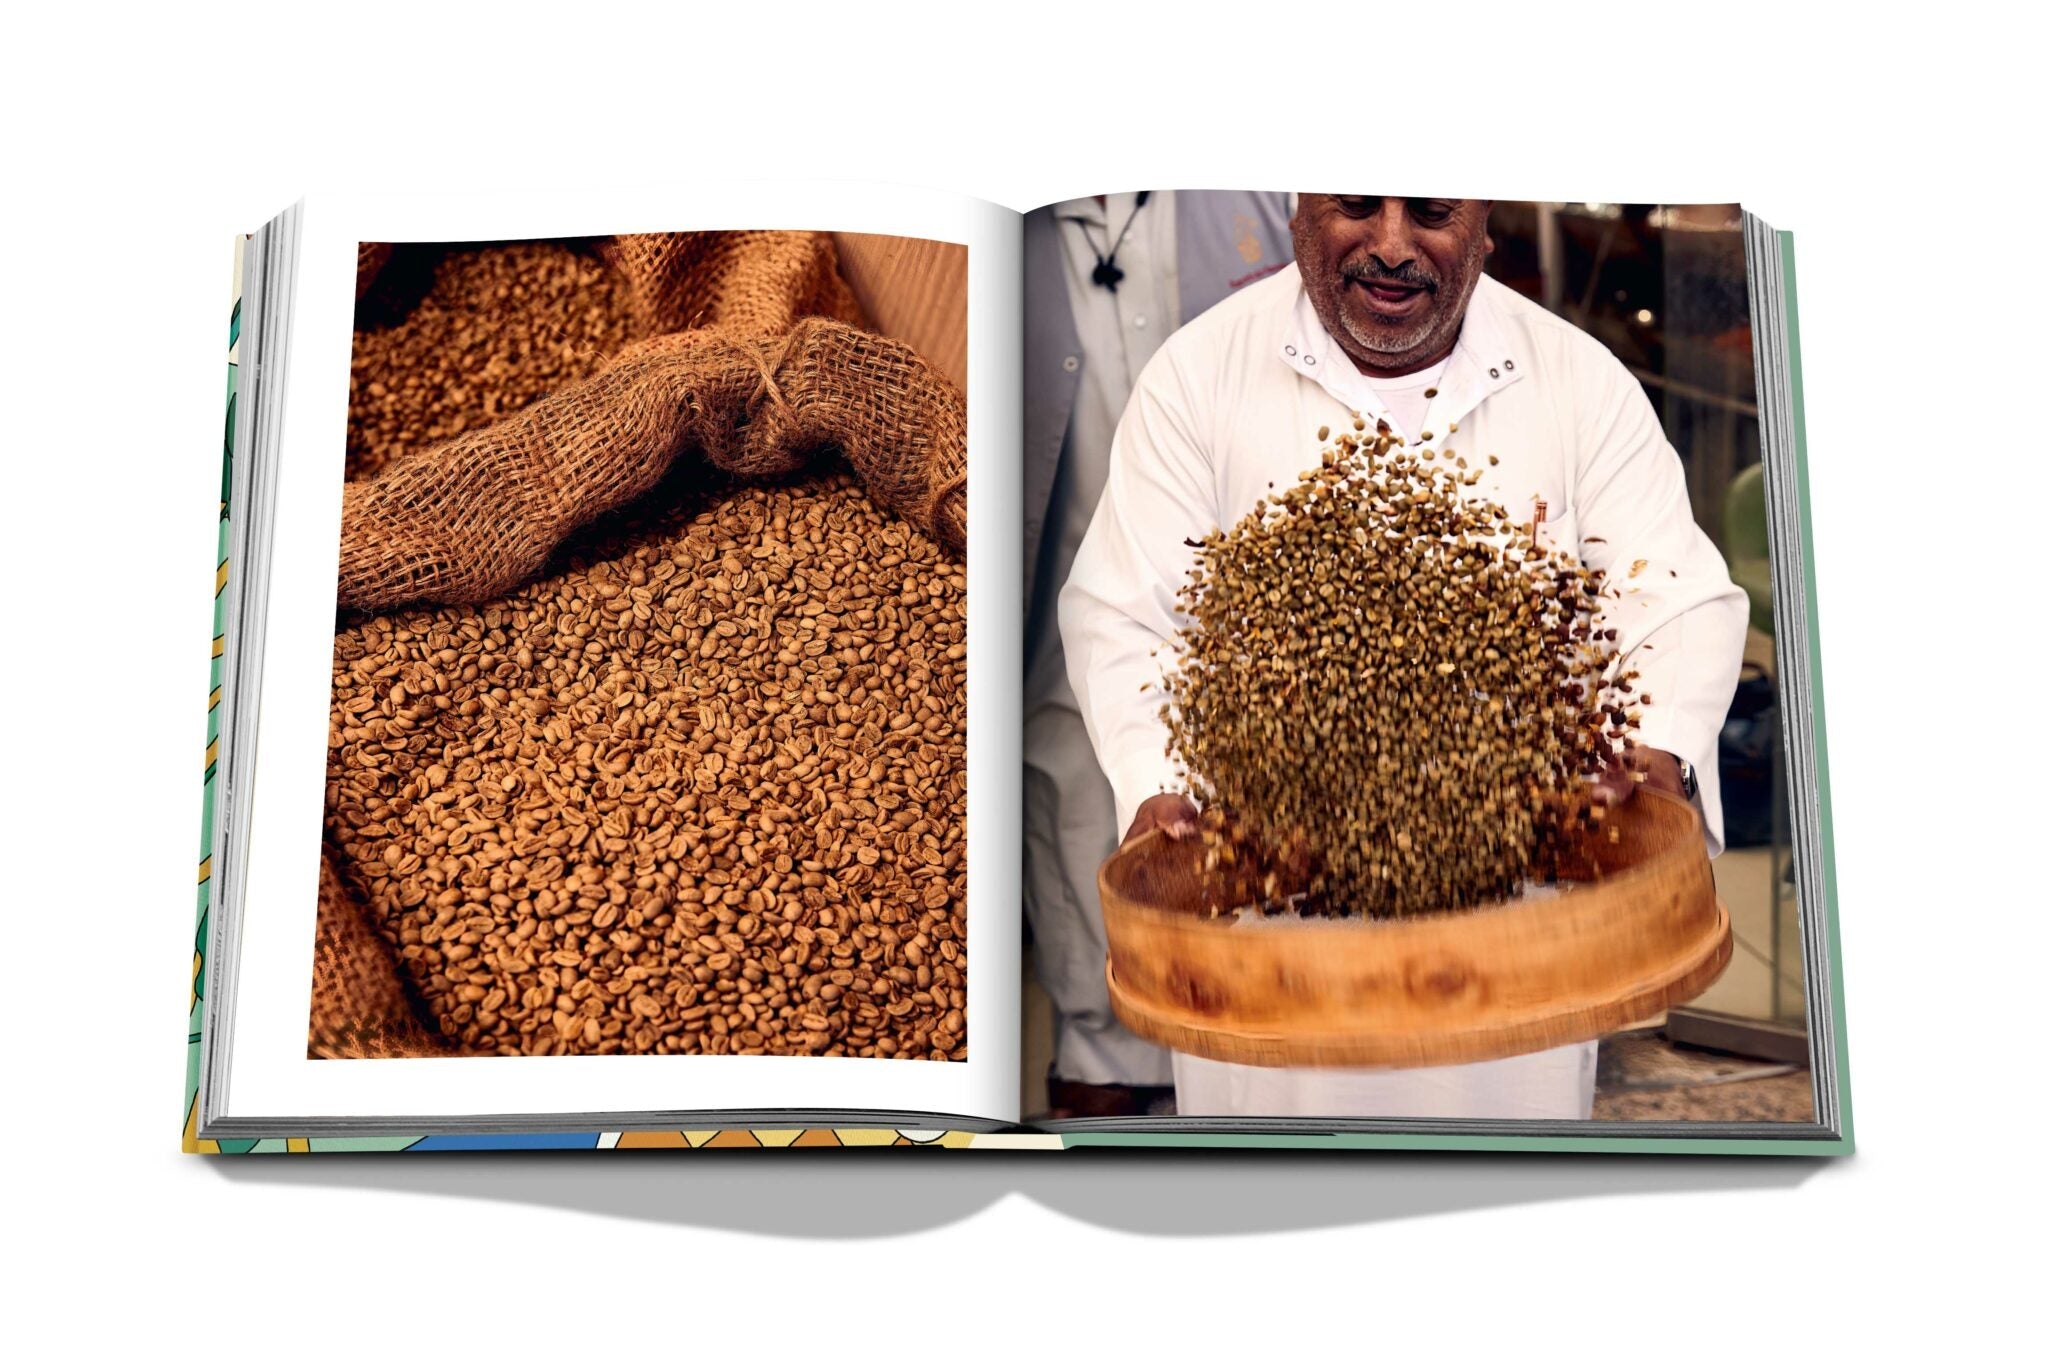 Assouline Saudi Coffee: Die Kultur der Gastfreundschaft